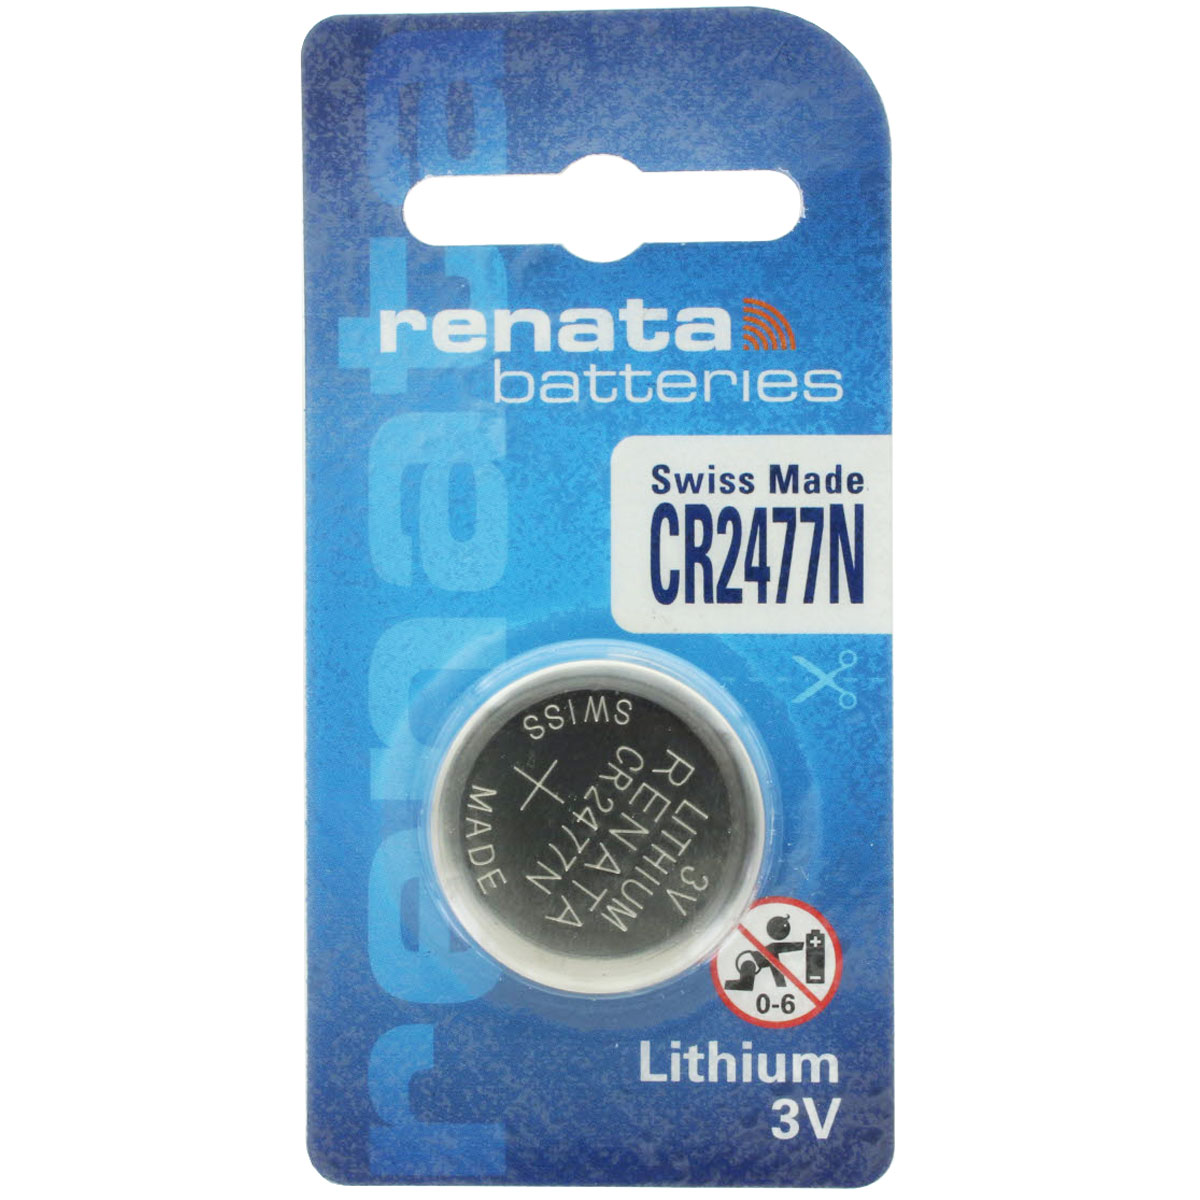 4 x Renata CR 2477N 3V Lithium Knopfzelle Batterie im Blister N Version 